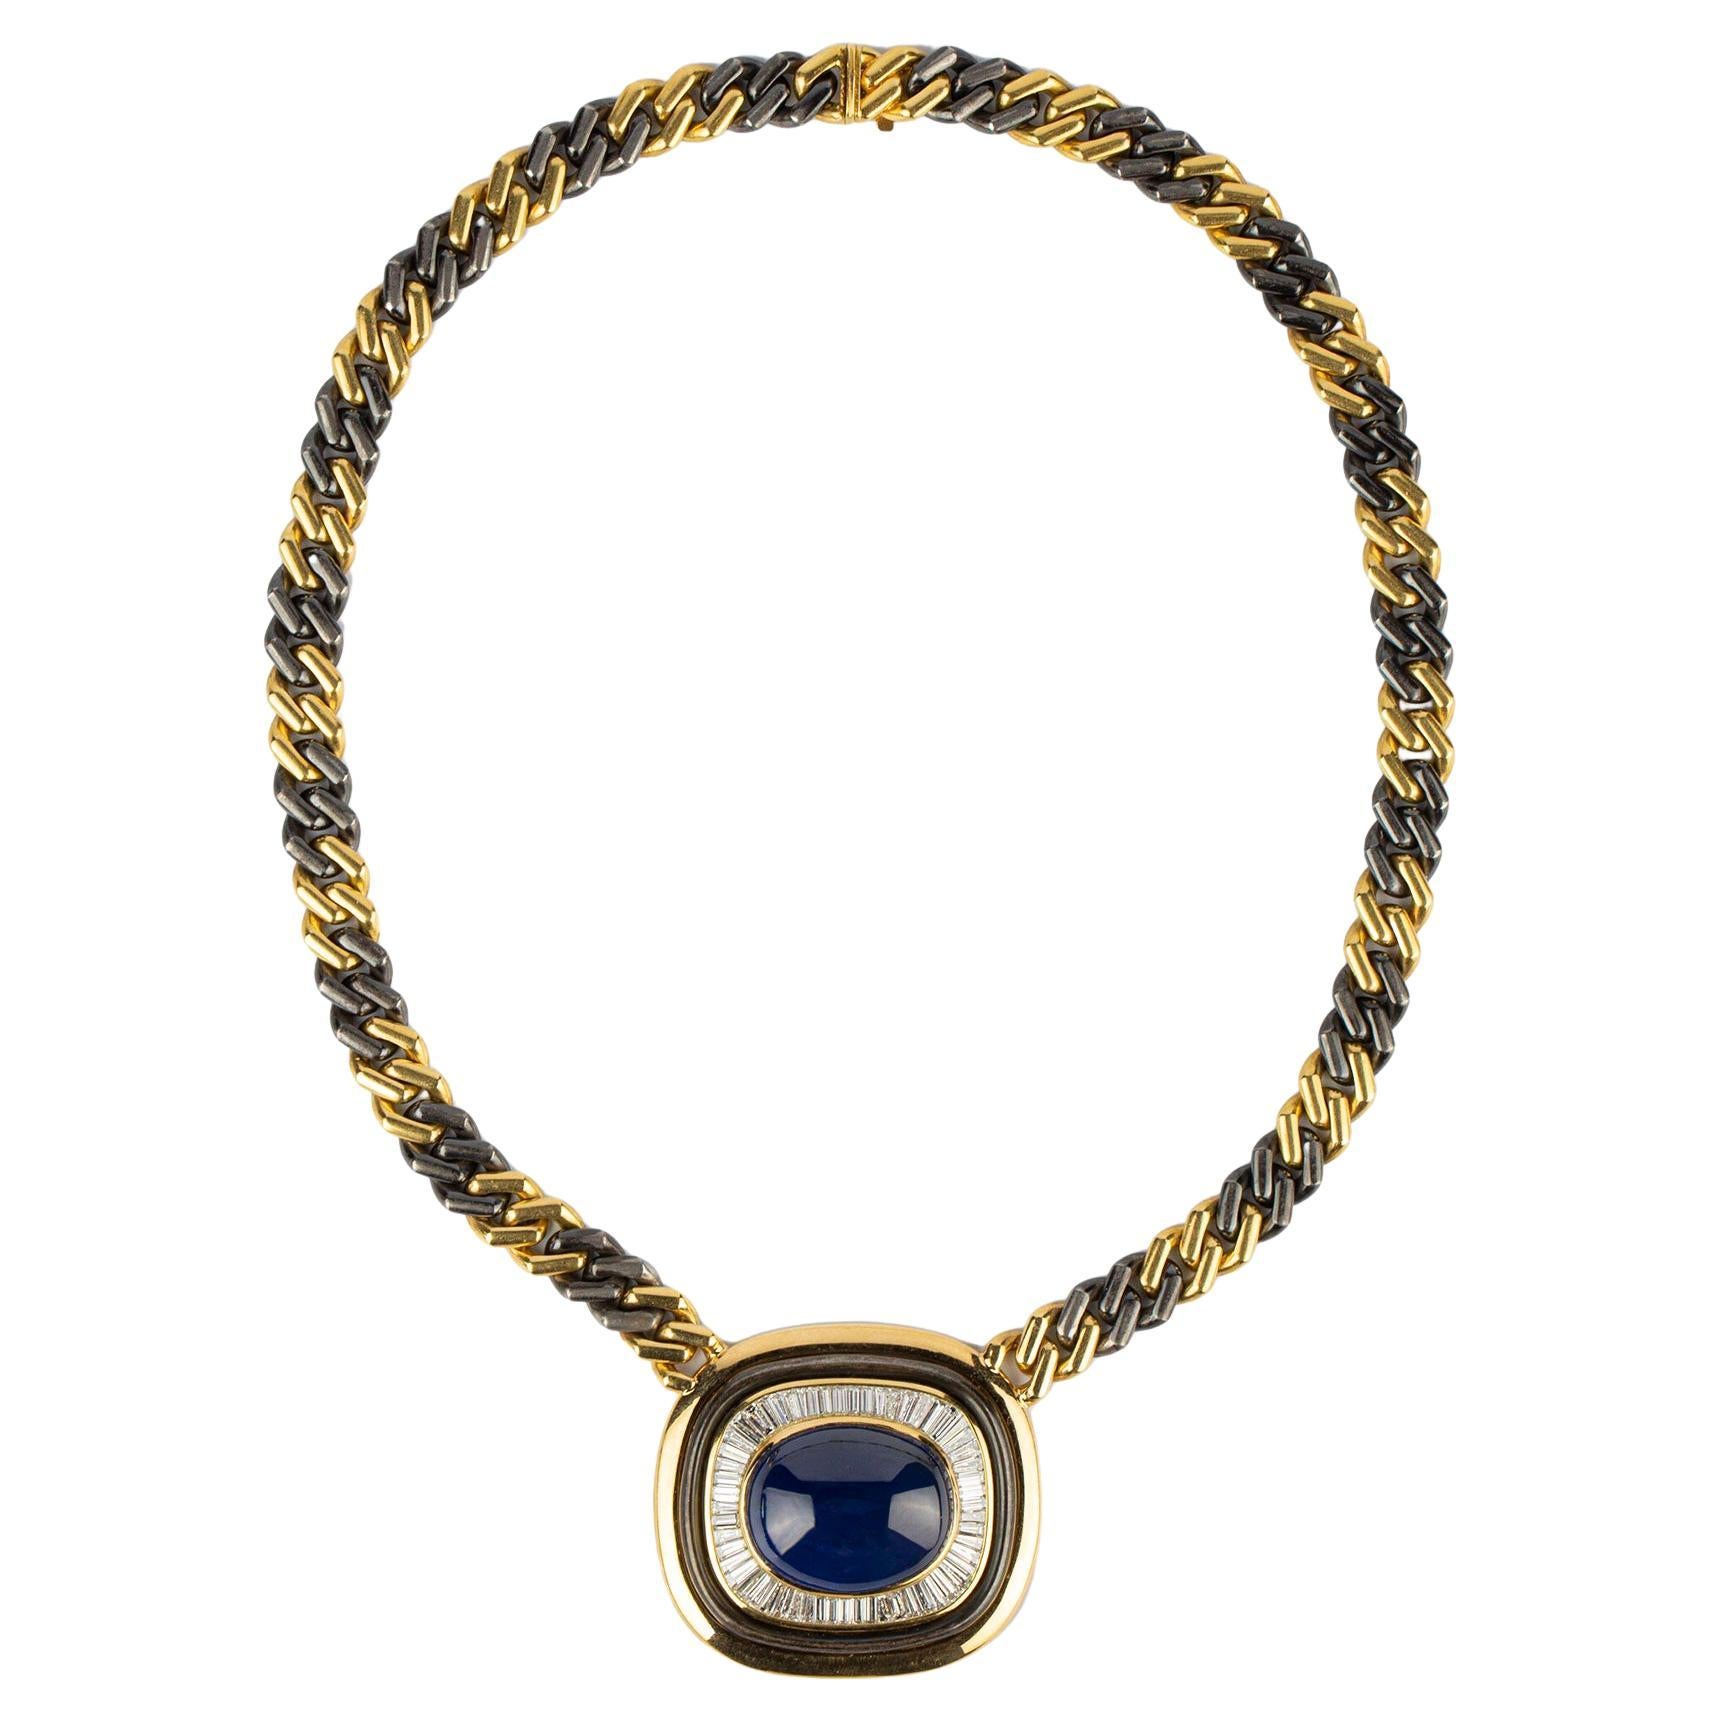 Bulgari Natural Cabochon Sapphire Chain Necklace